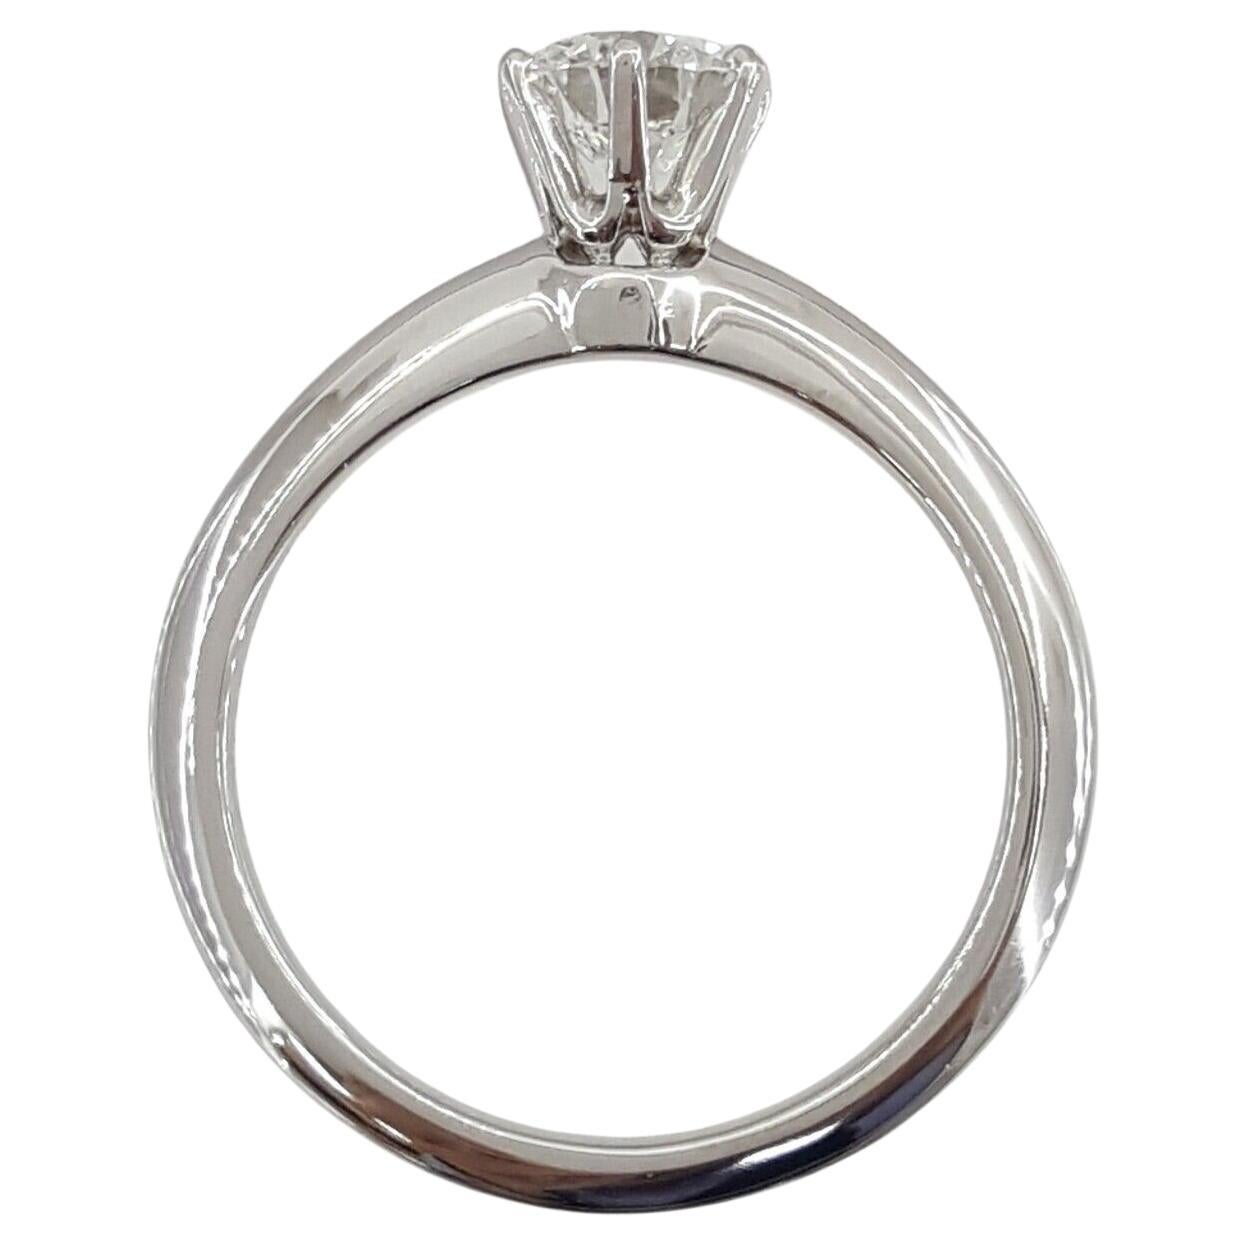 Ein exquisiter Diamantring von Tiffany & Co. mit rundem Brillantschliff
0,85 Karat
G FARBE
VVS1 KLARHEIT
Einzelhandelspreis über 14.000 $
Wird mit GIA-Bericht geliefert